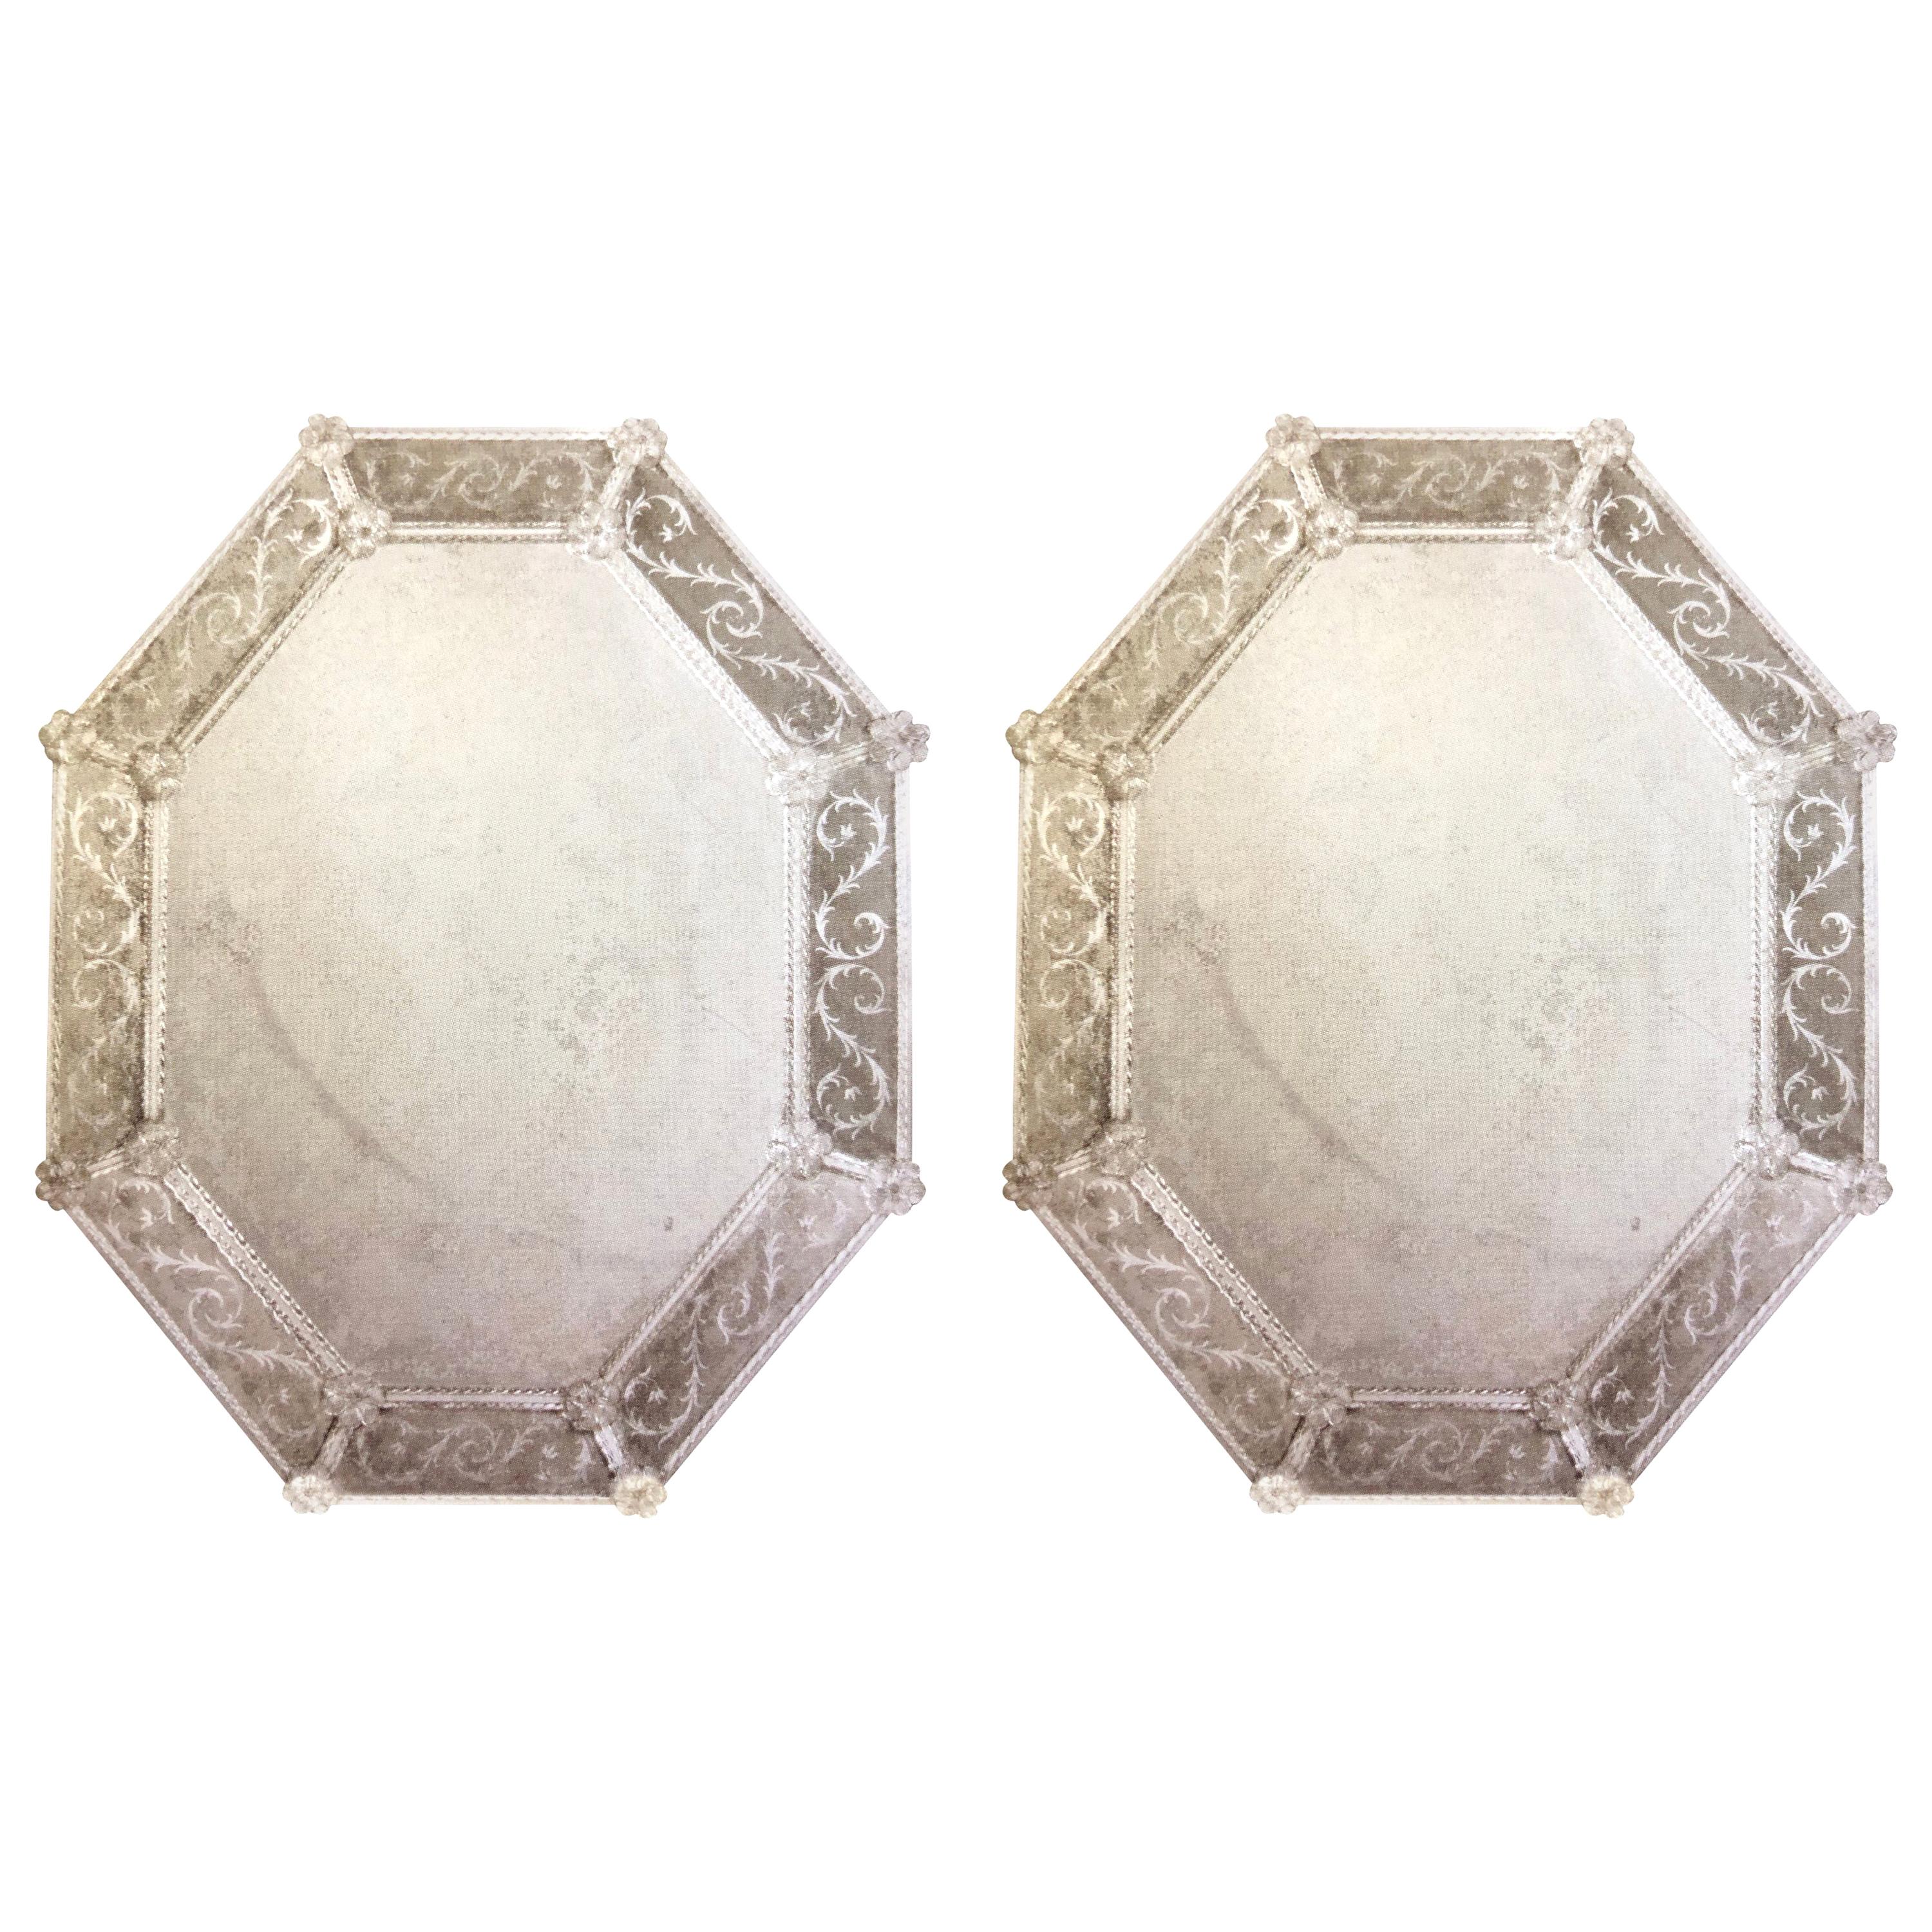 Deux grands miroirs muraux octogonaux en verre vénitien de Murano, anciens et gravés